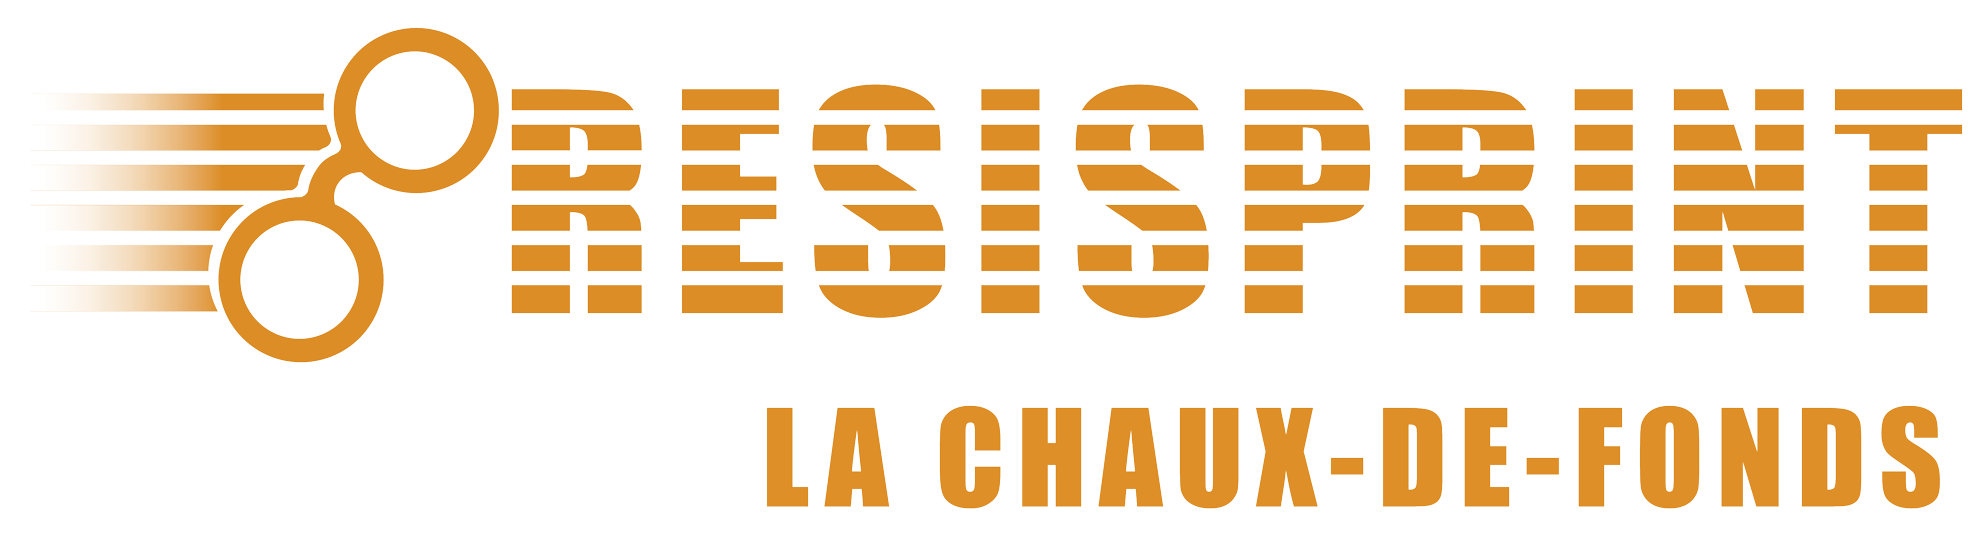 logo resisprint